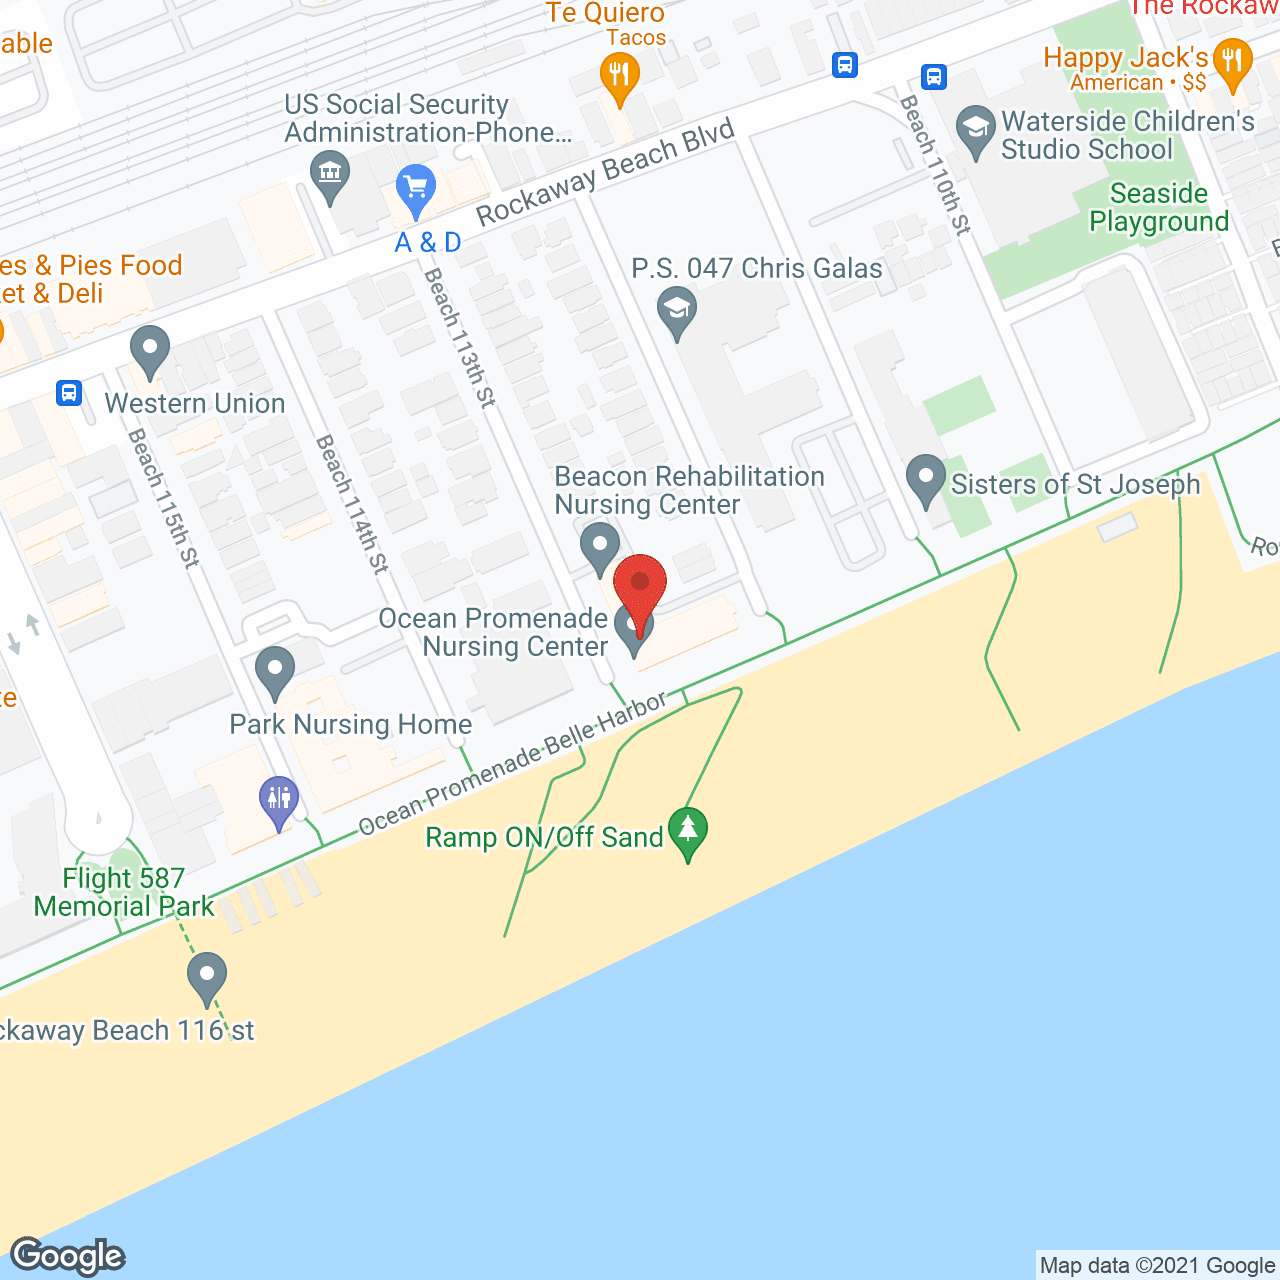 Ocean Promenade Nursing Center in google map